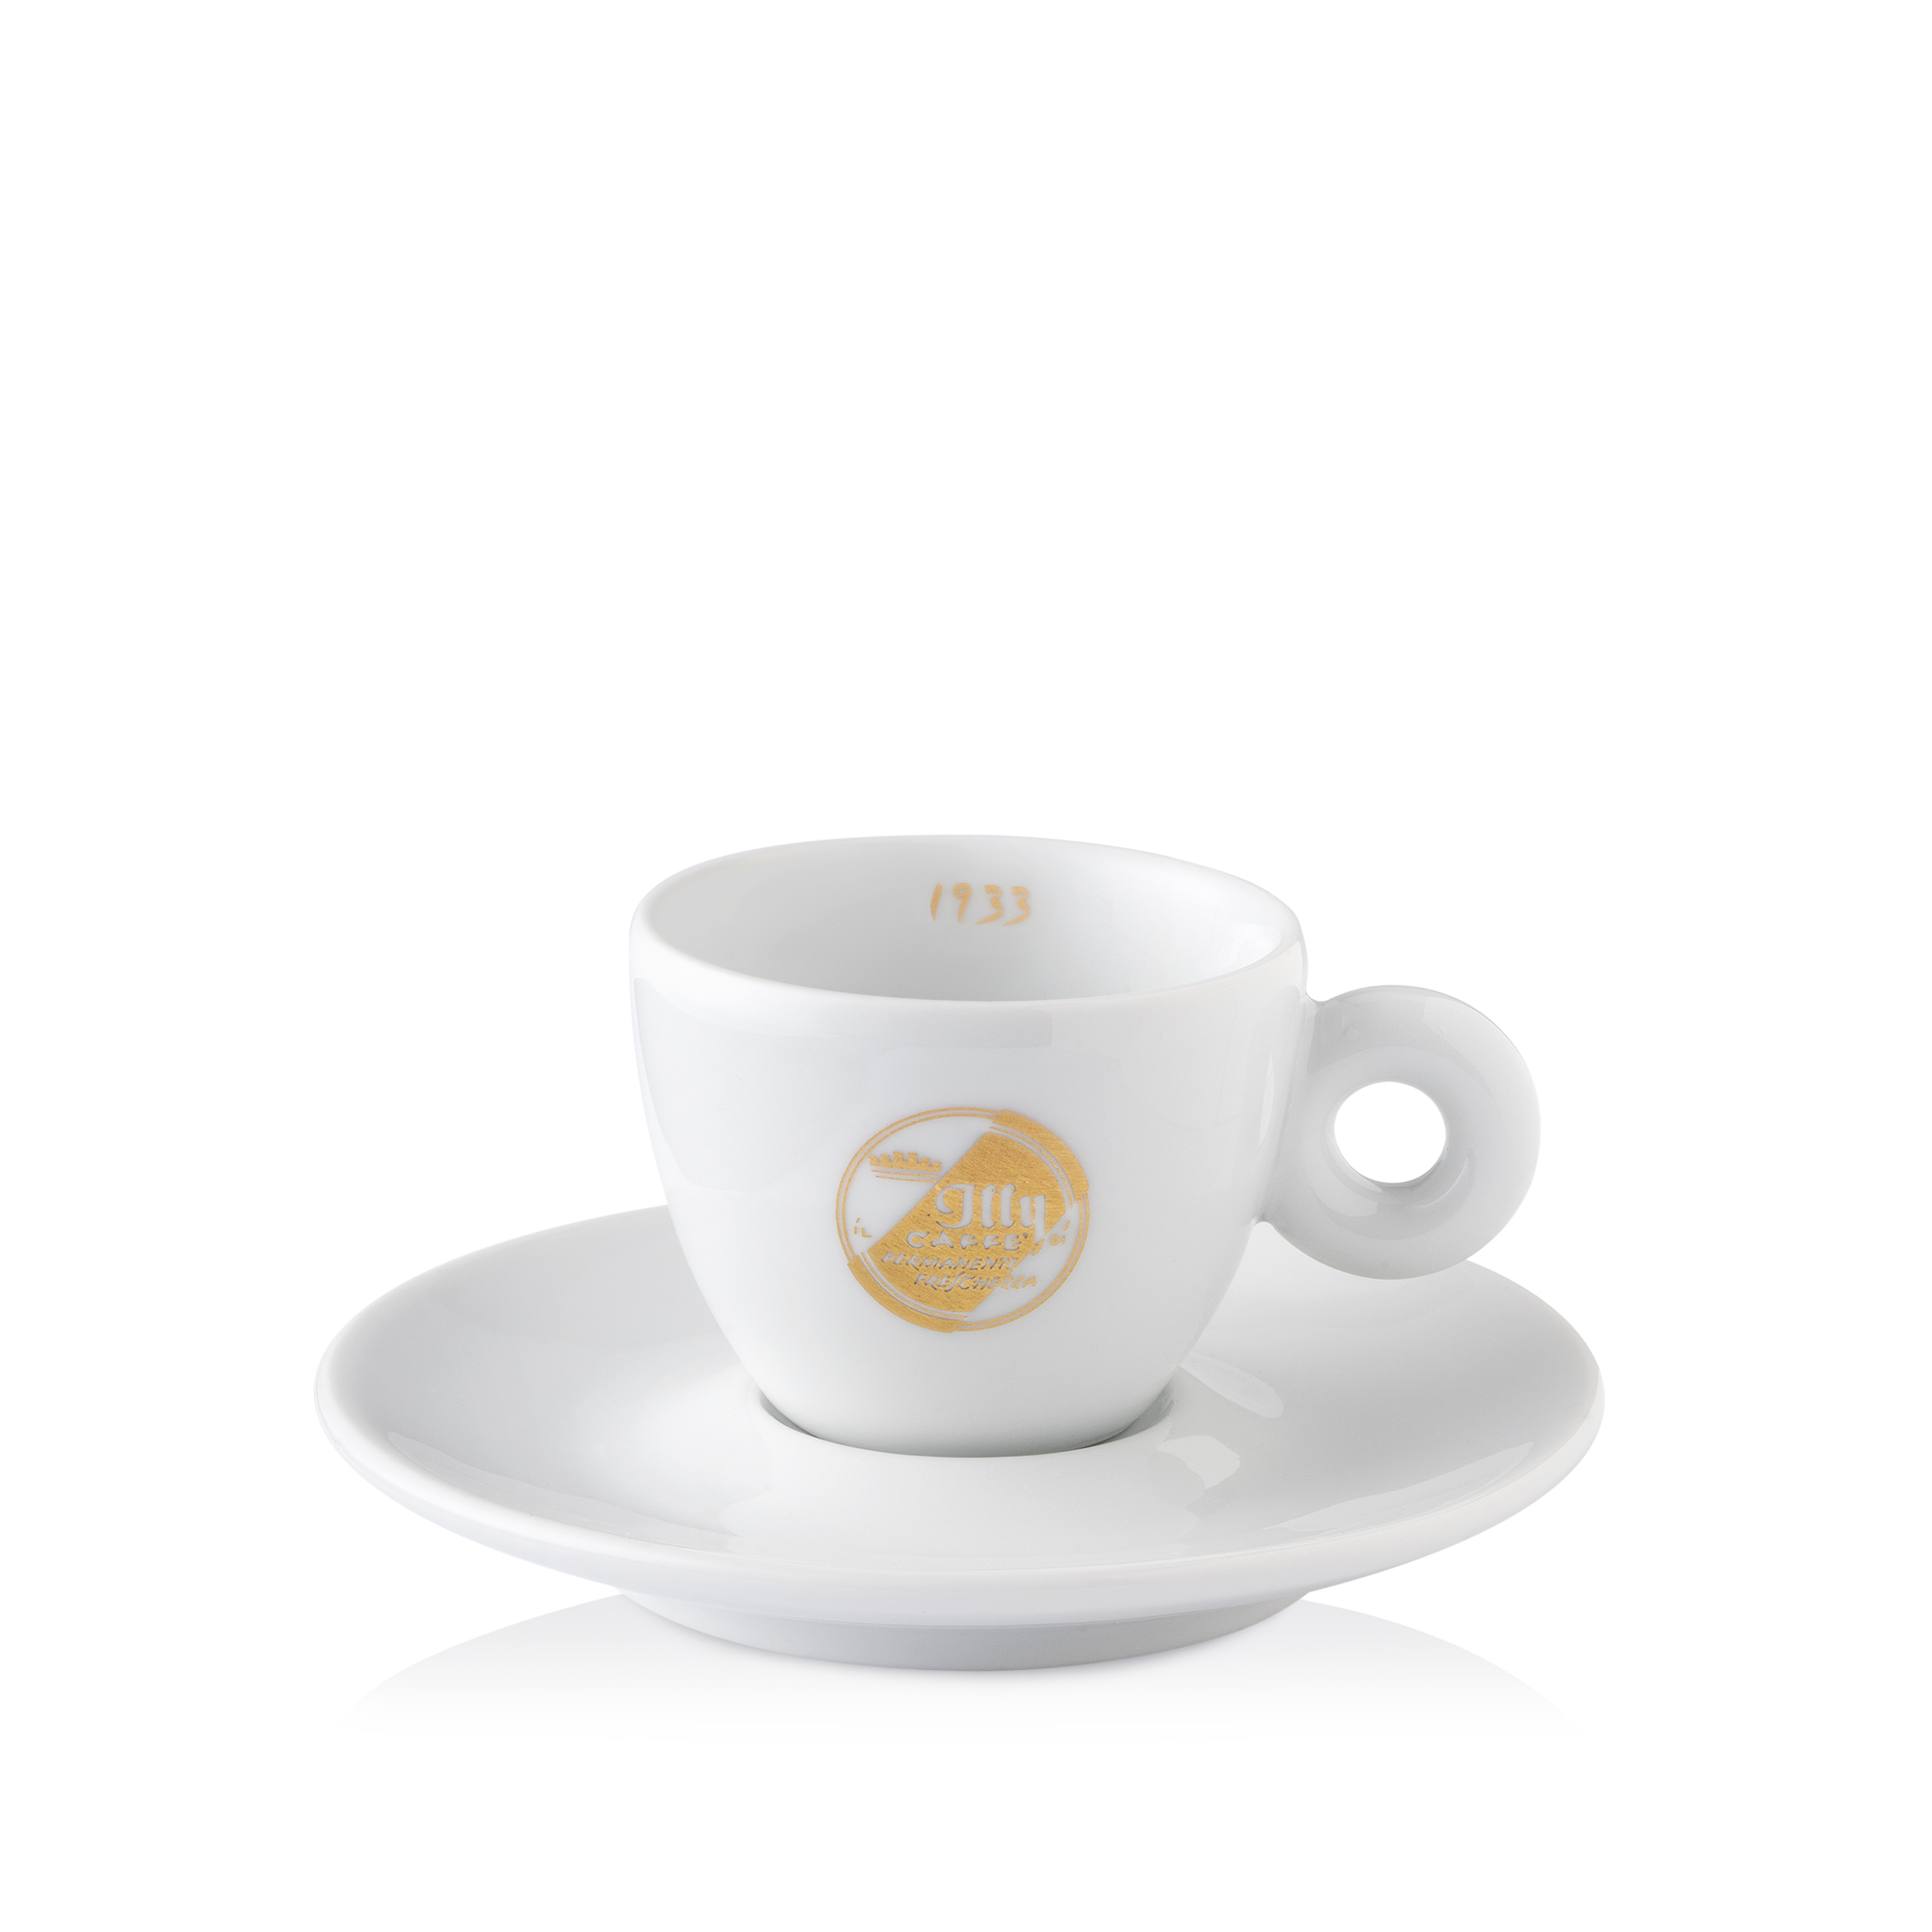 2 Jubiläumsdosen zum 90. Geburtstag mit CLASSICO Kaffee (Bohnen und gemahlen) inkl. Espressotassen